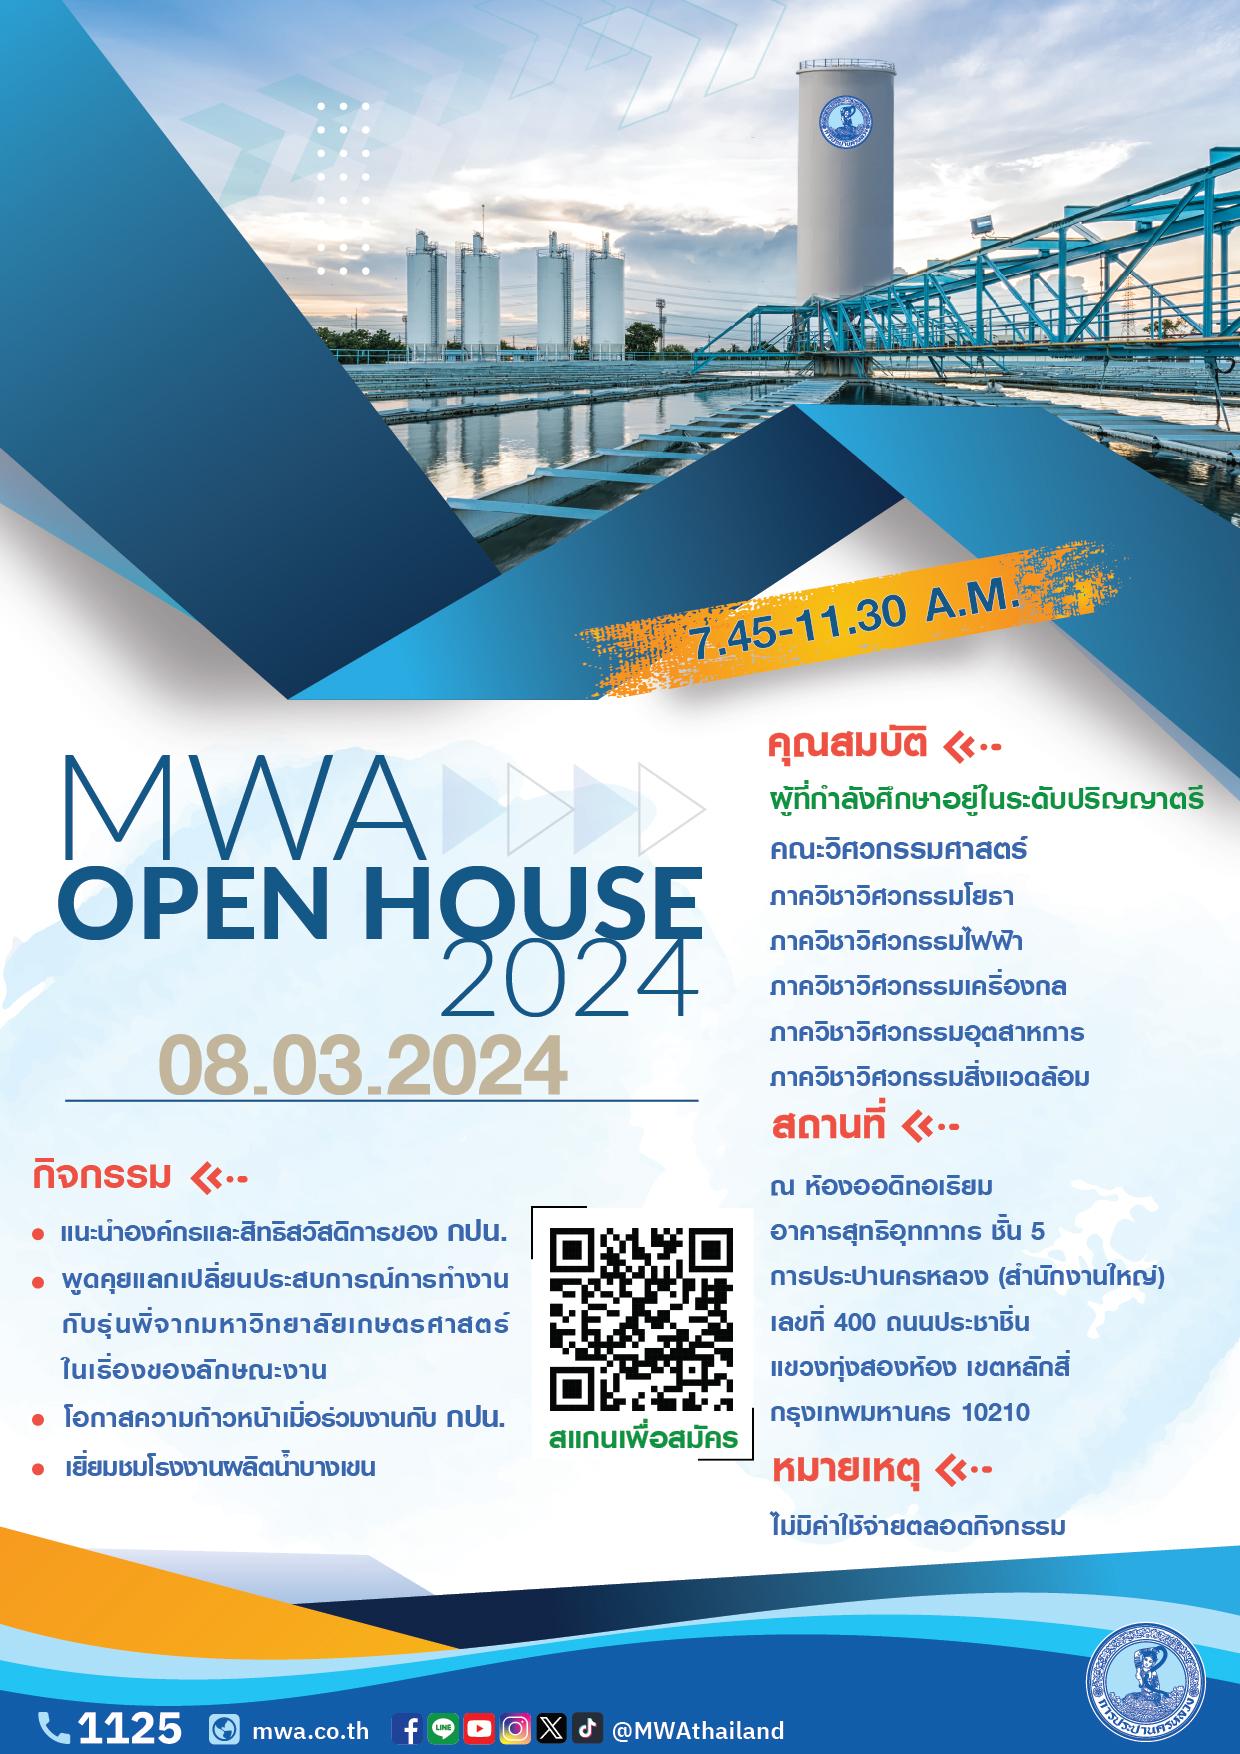 ขอเชิญน้องๆ นิสิต นักศึกษา คณะวิศวกรรมศาสตร์ เข้าร่วมกิจกรรม “MWA Open House 2024”